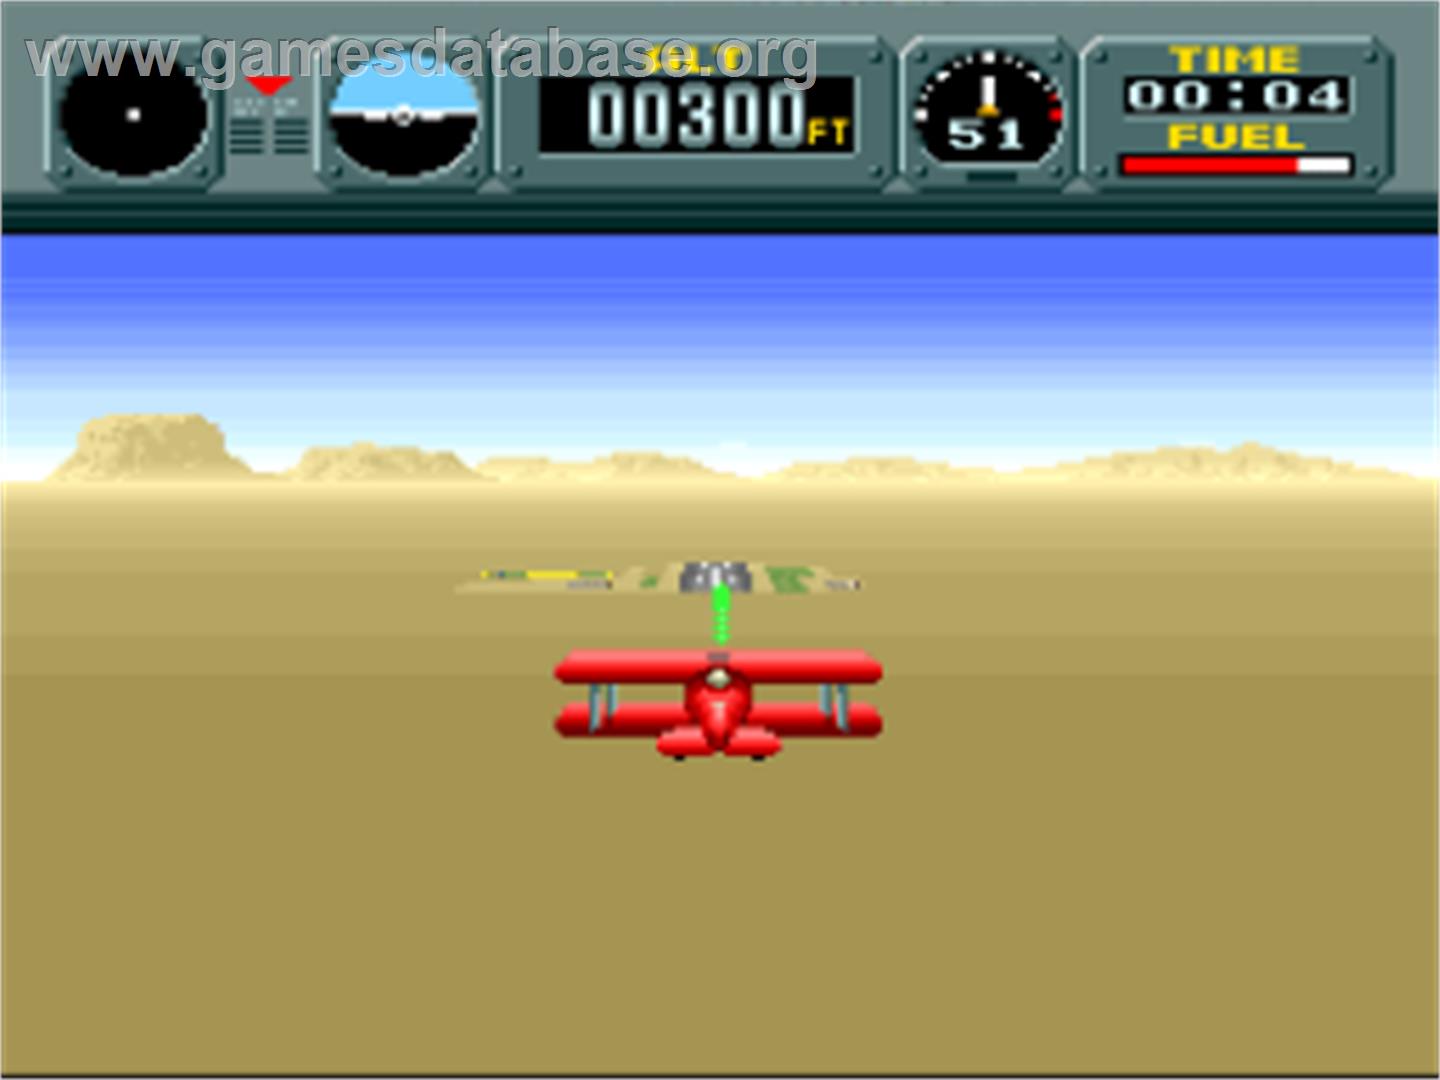 Pilotwings - Nintendo SNES - Artwork - In Game